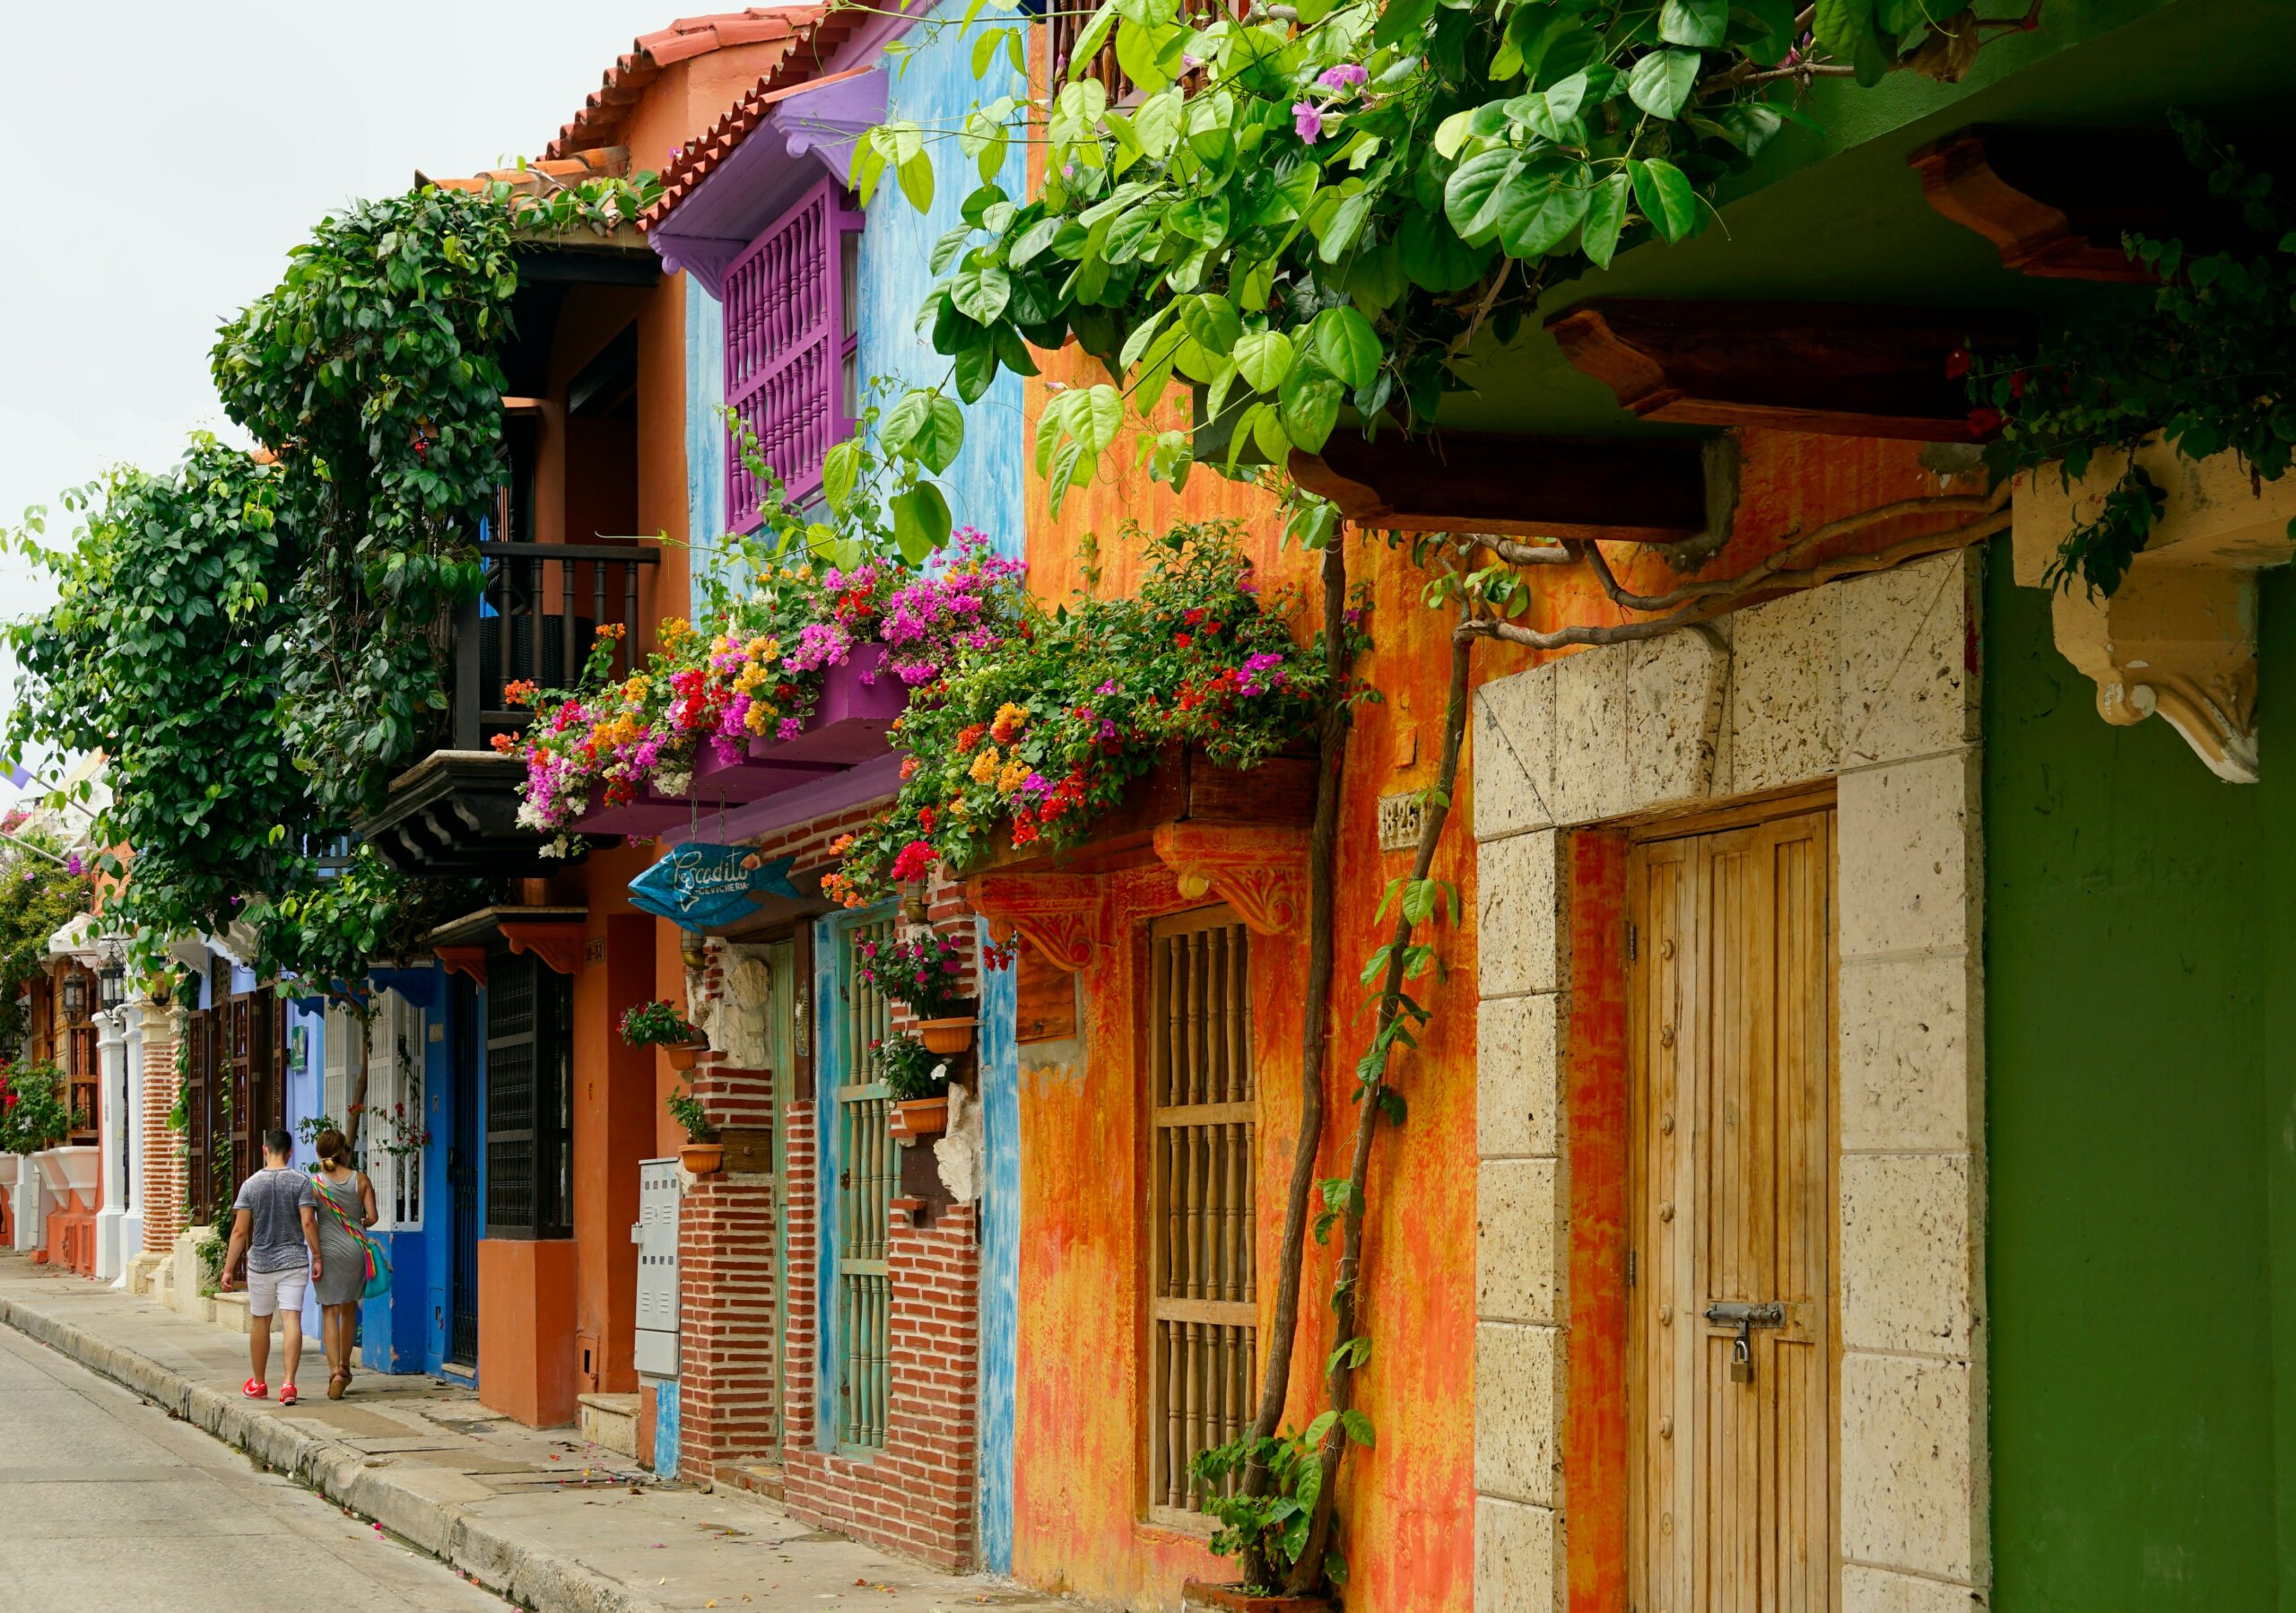 Apesar de Cartagena possuir muitas construções coloniais, também há prédios e casas que remetem a vilarejos antigos e simples.